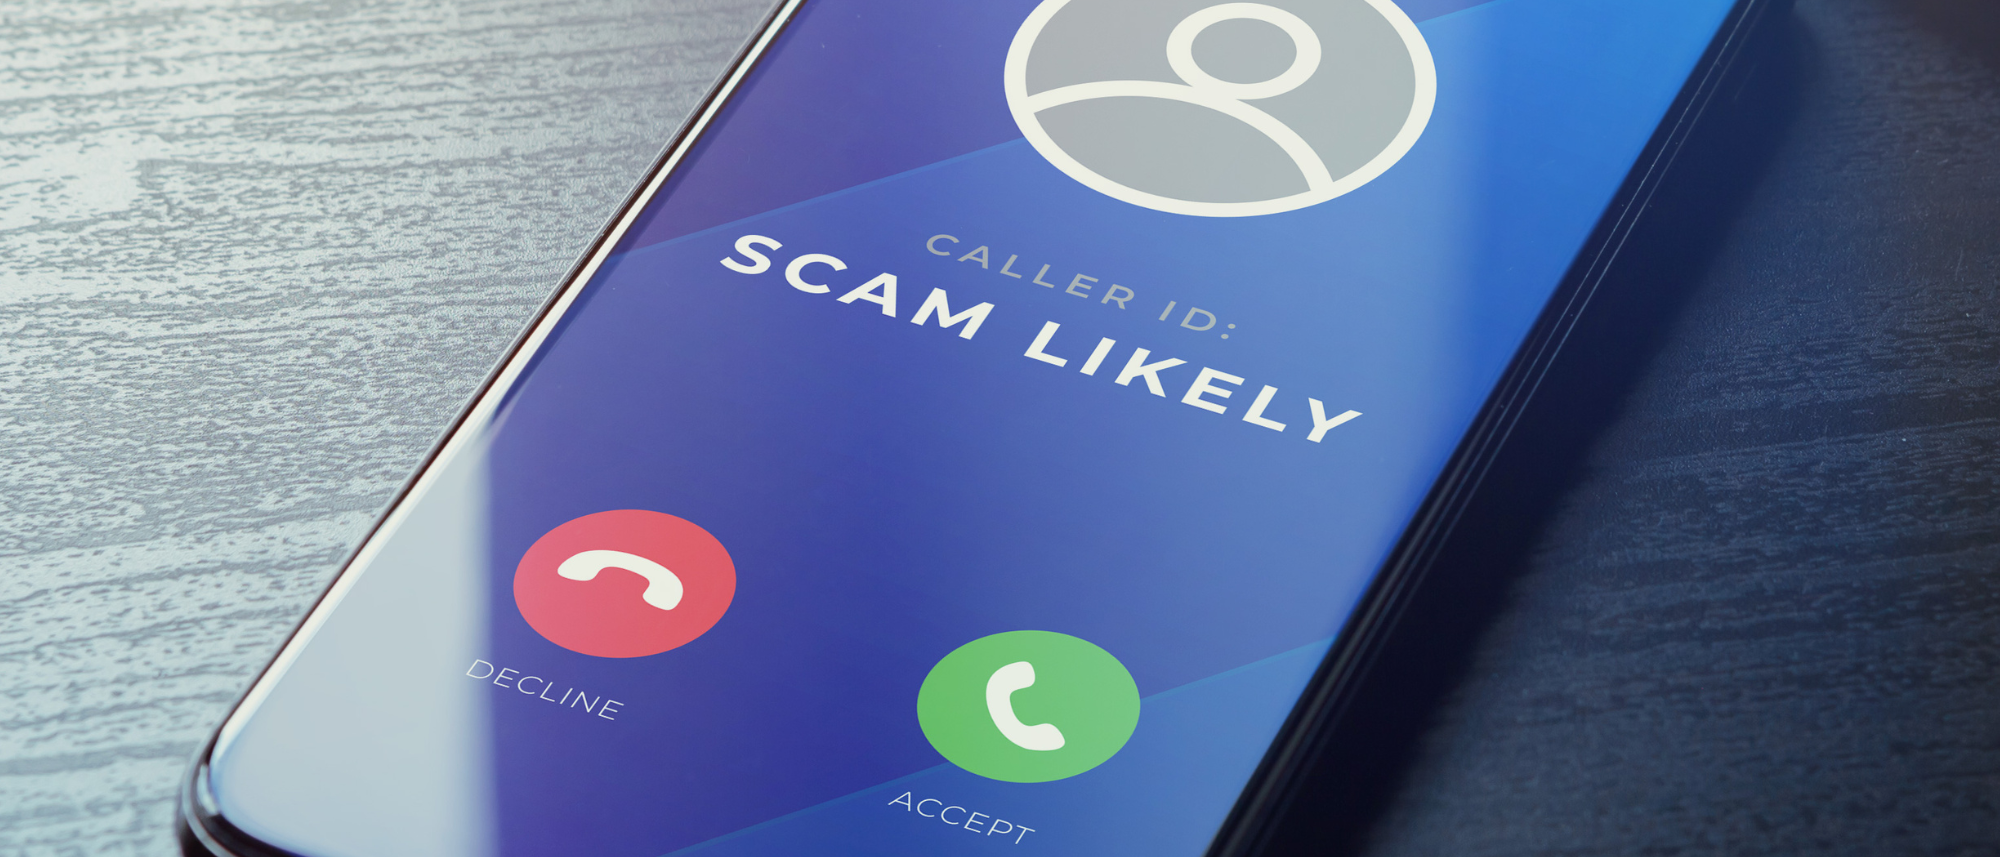 SimpleVoIP against scam calls